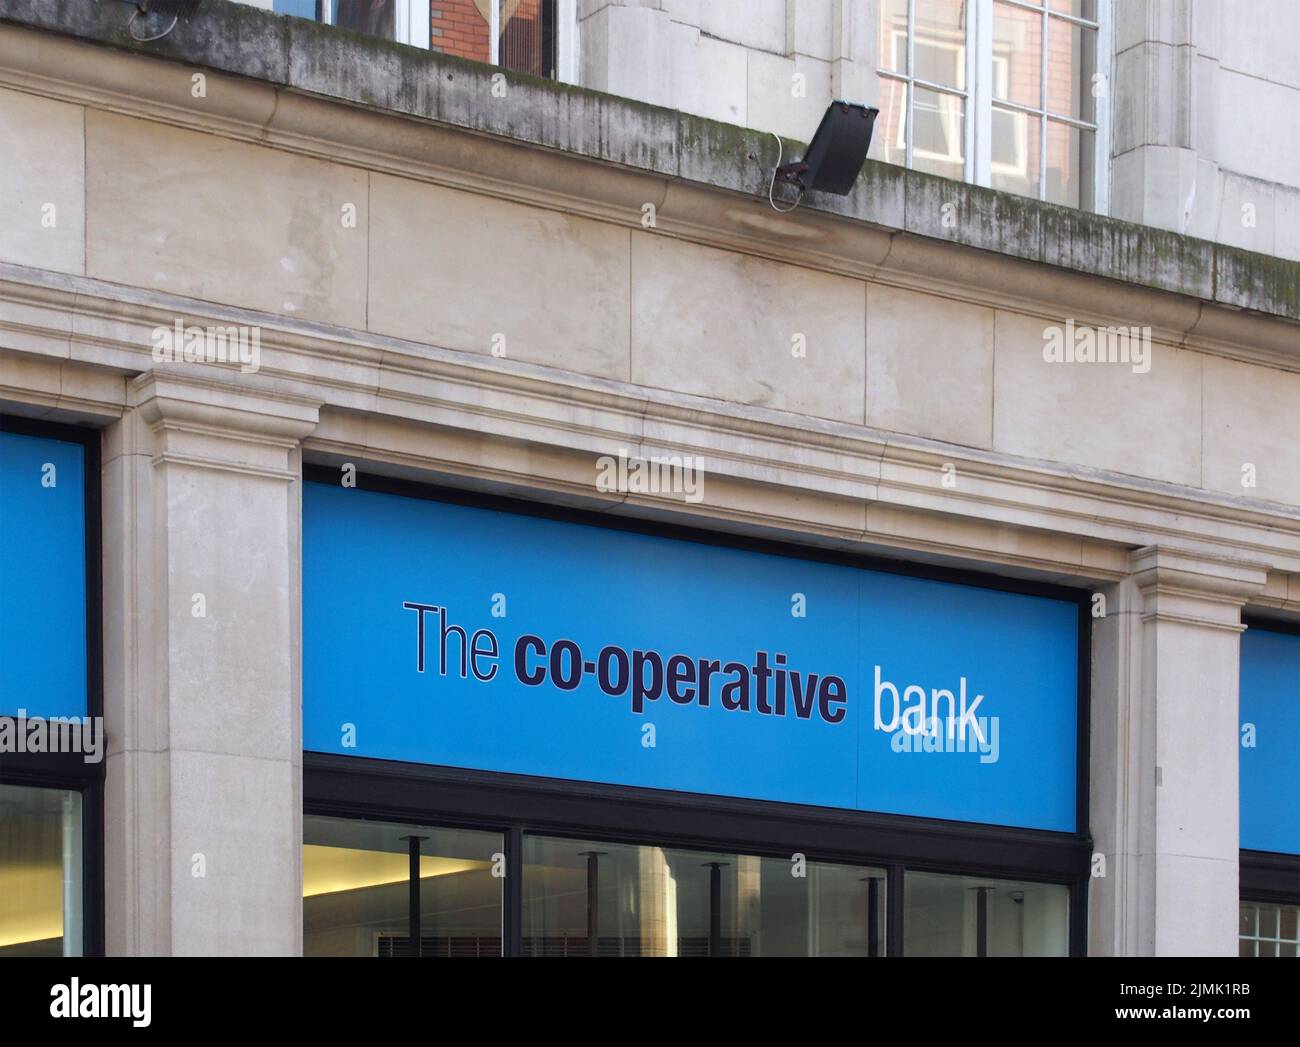 Panneau au-dessus de l'entrée d'une banque coopérative dans le centre-ville de Manchester Banque D'Images